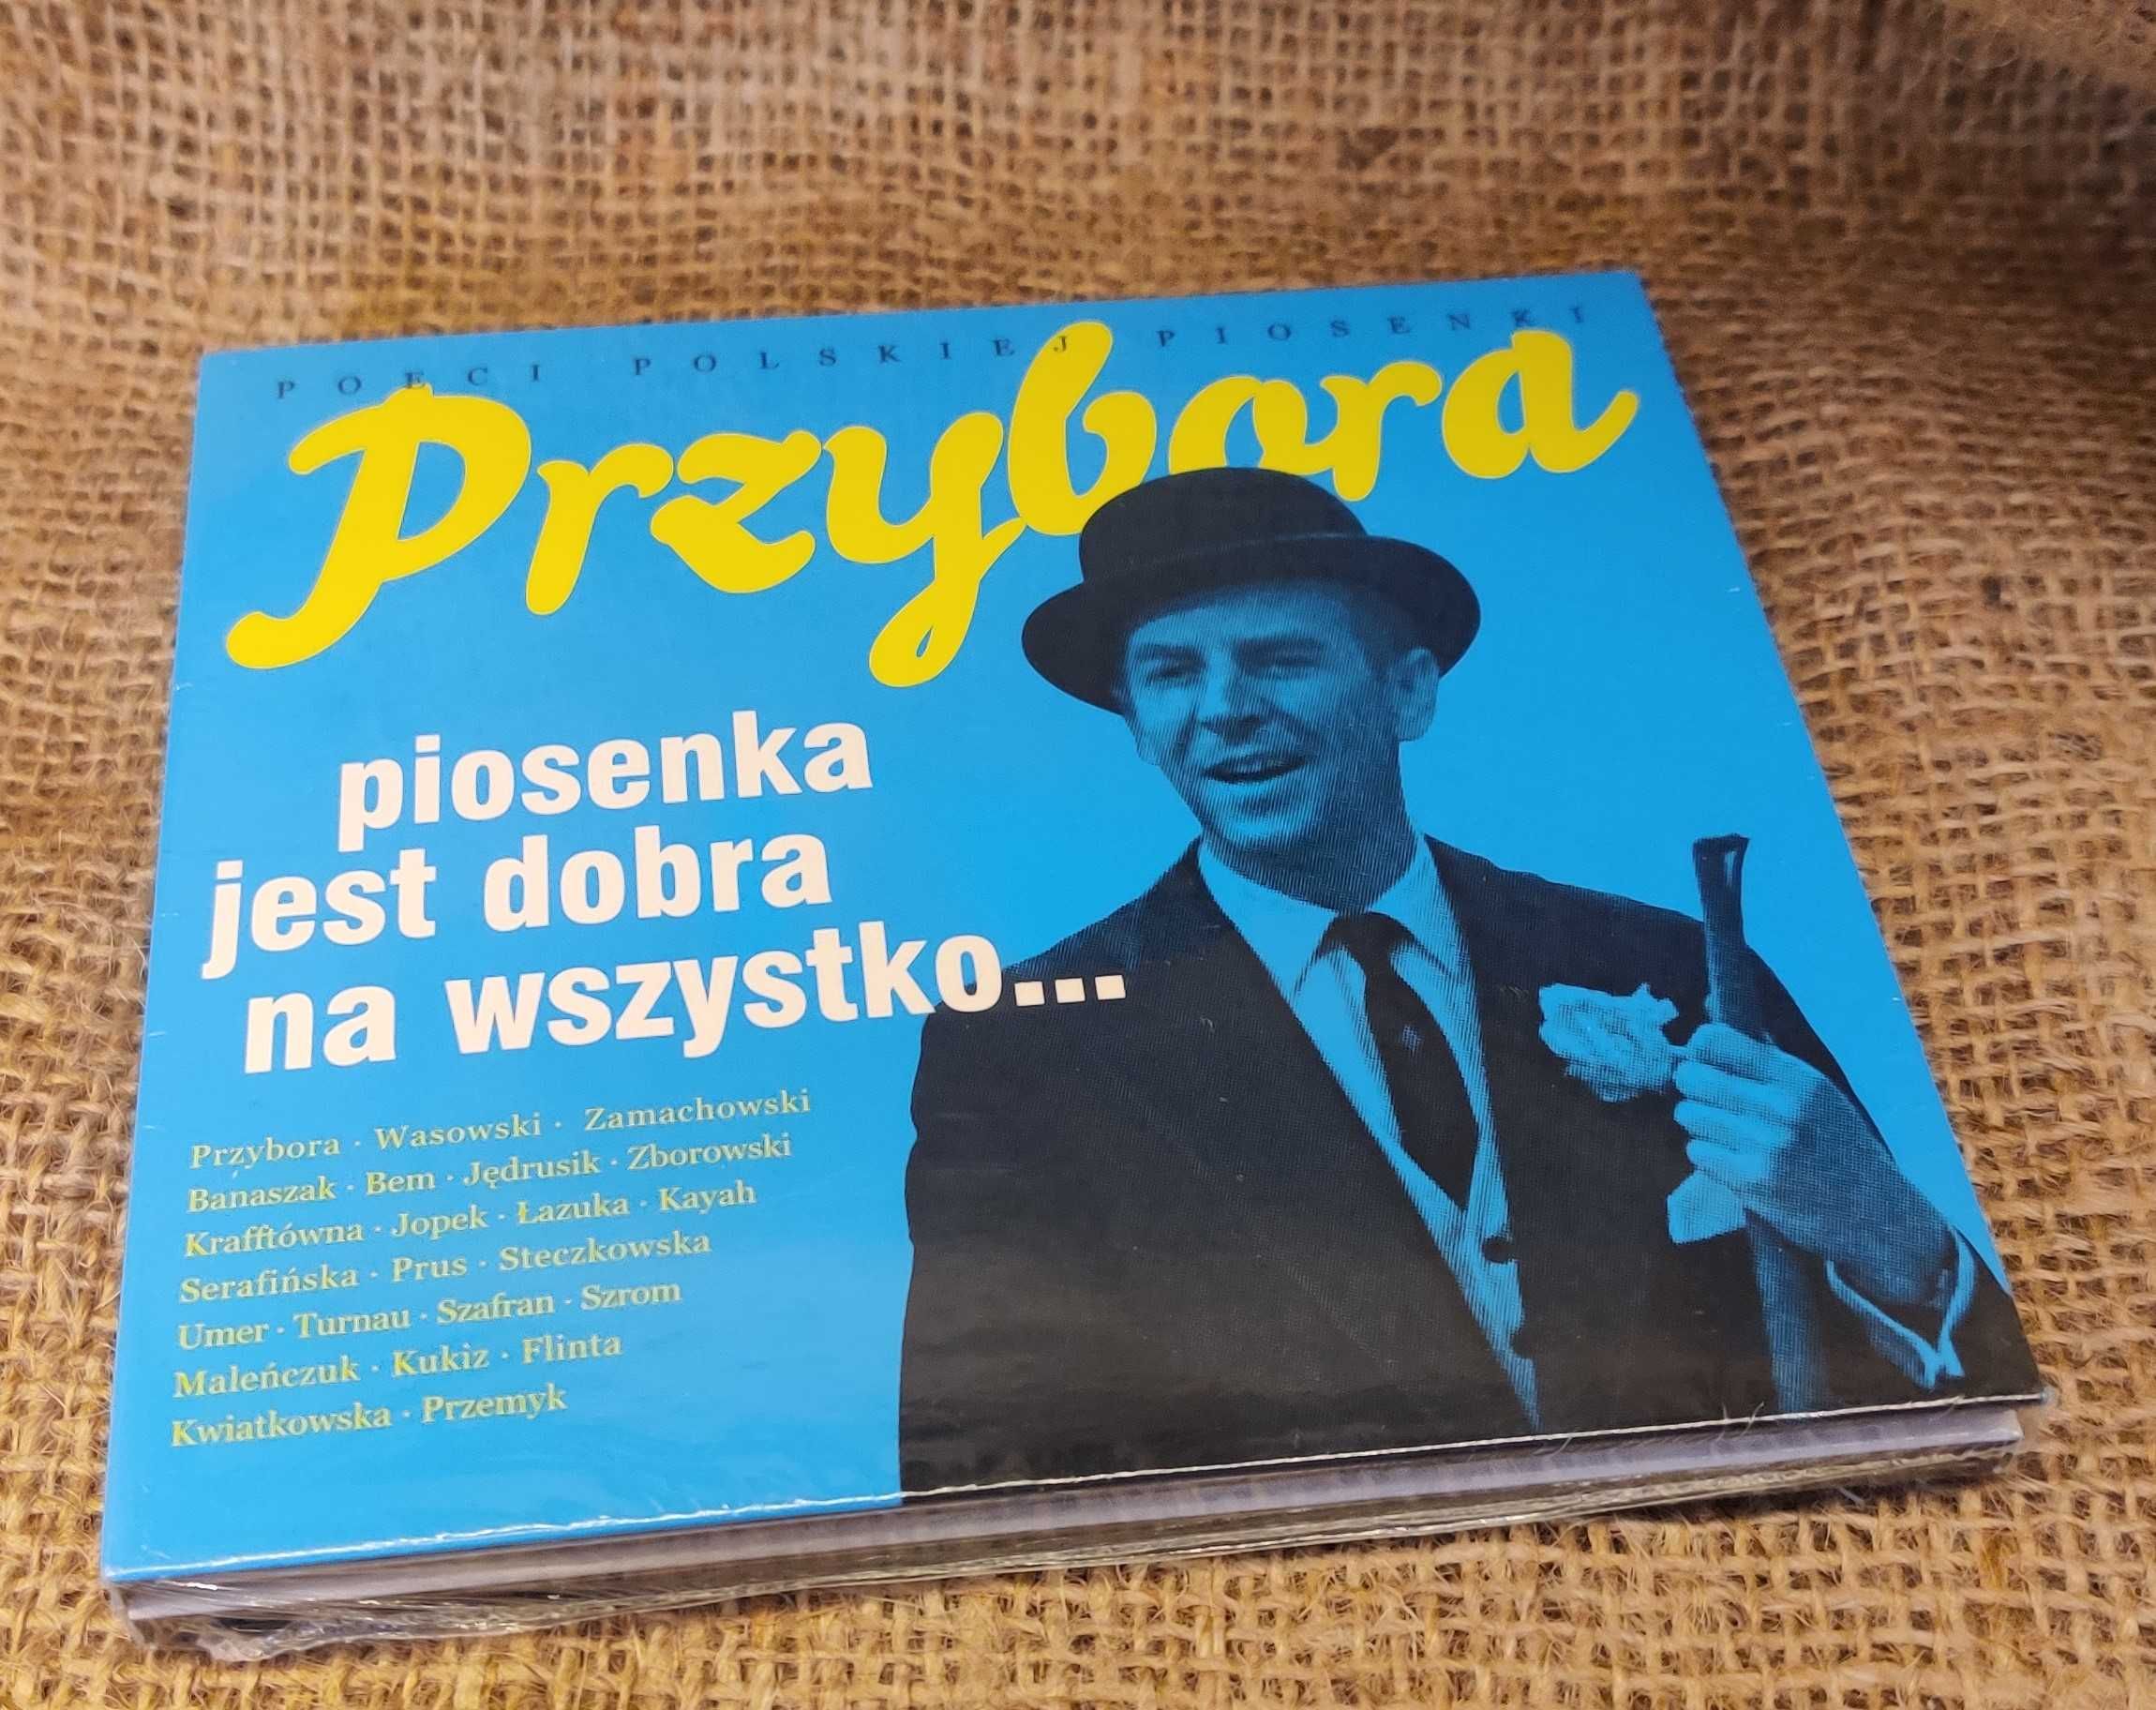 Poeci polskiej piosenki: Jeremi Przybora.